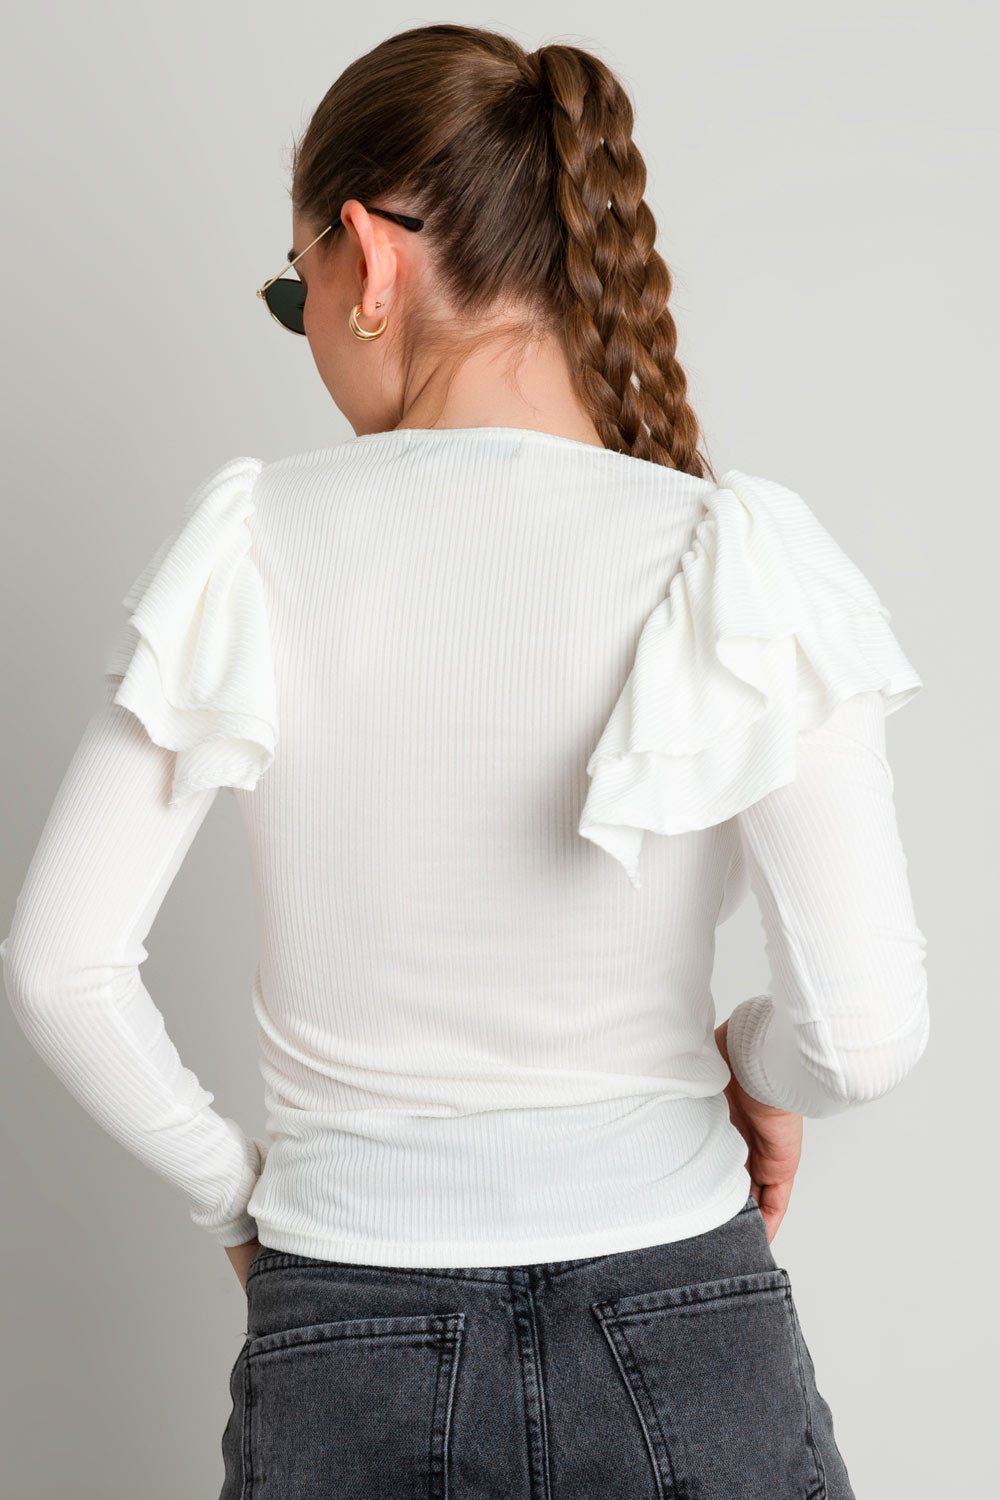 Top de fit ajustado, cuello redondo, manga larga y detalle de capas de olanes en hombros.